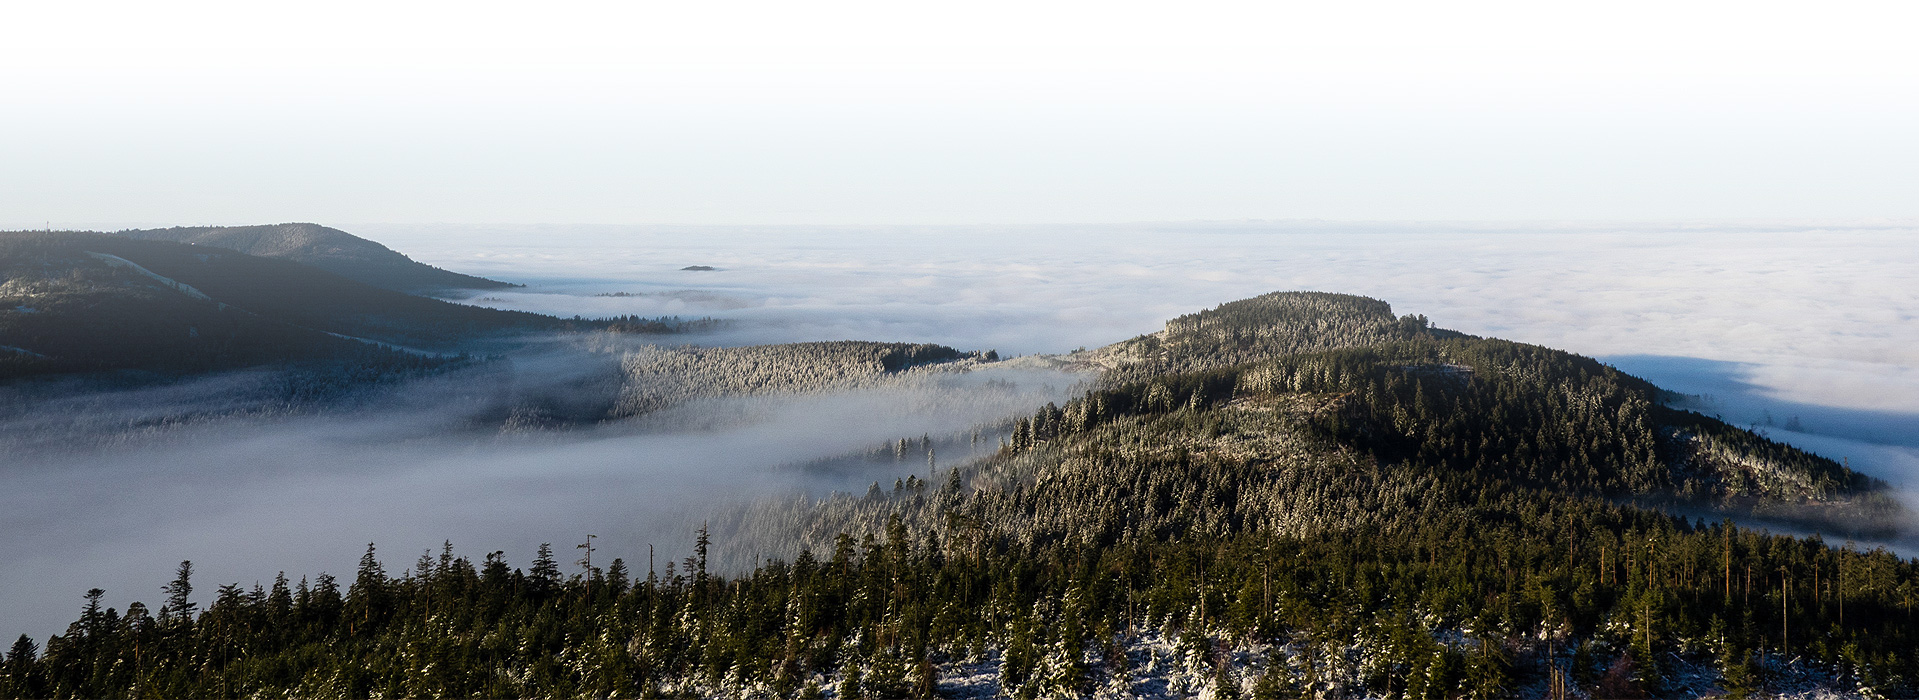 Ausblick über schneebestäubte Berge. Zwischen den Bergen hängt Nebel, die Ebene hinter den Bergen verschwindet in einem Wolkenmeer.